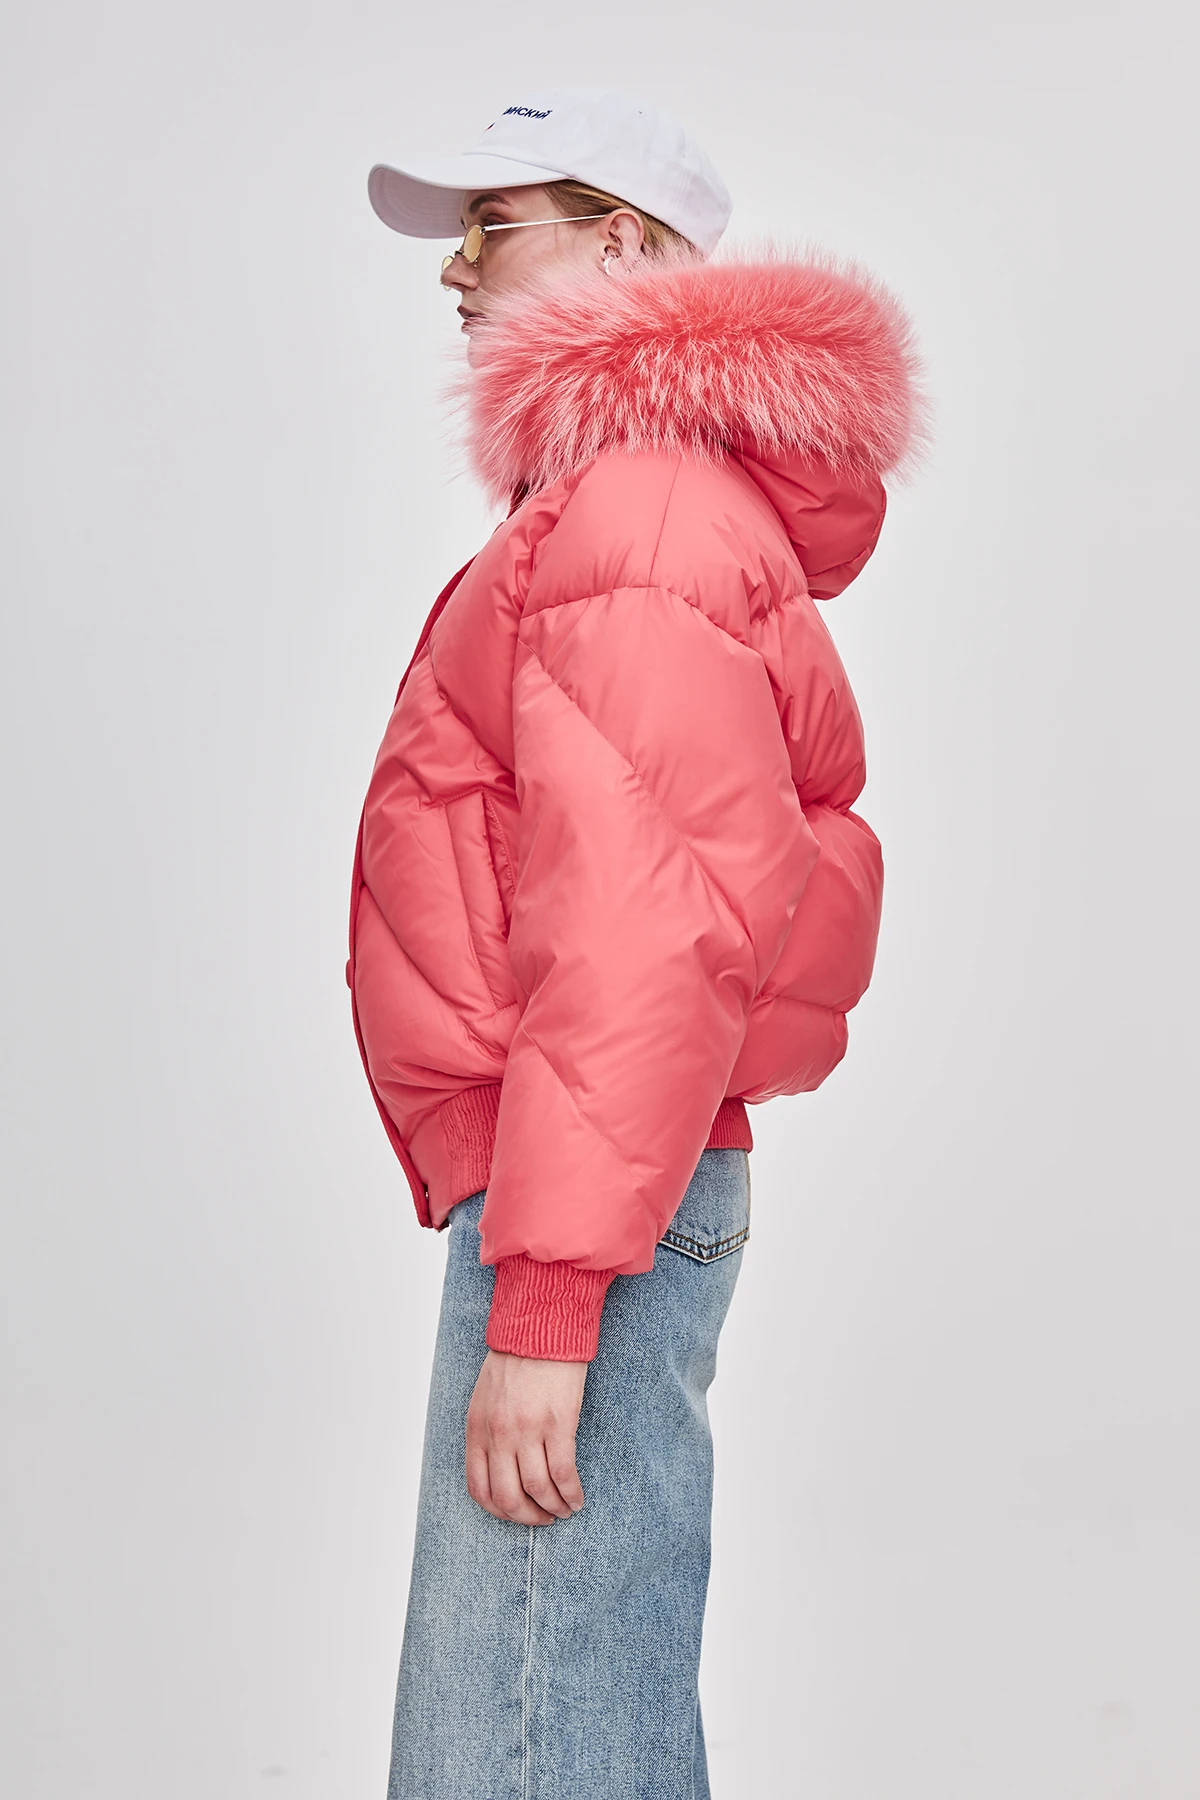 JAZZEVAR Новинка зимняя куртка модная уличная дизайнерская брендовая женская короткая куртка-пуховик на утином пуху; Красивая цветная меховая верхняя одежда для девочек; z18004 - Цвет: red 1